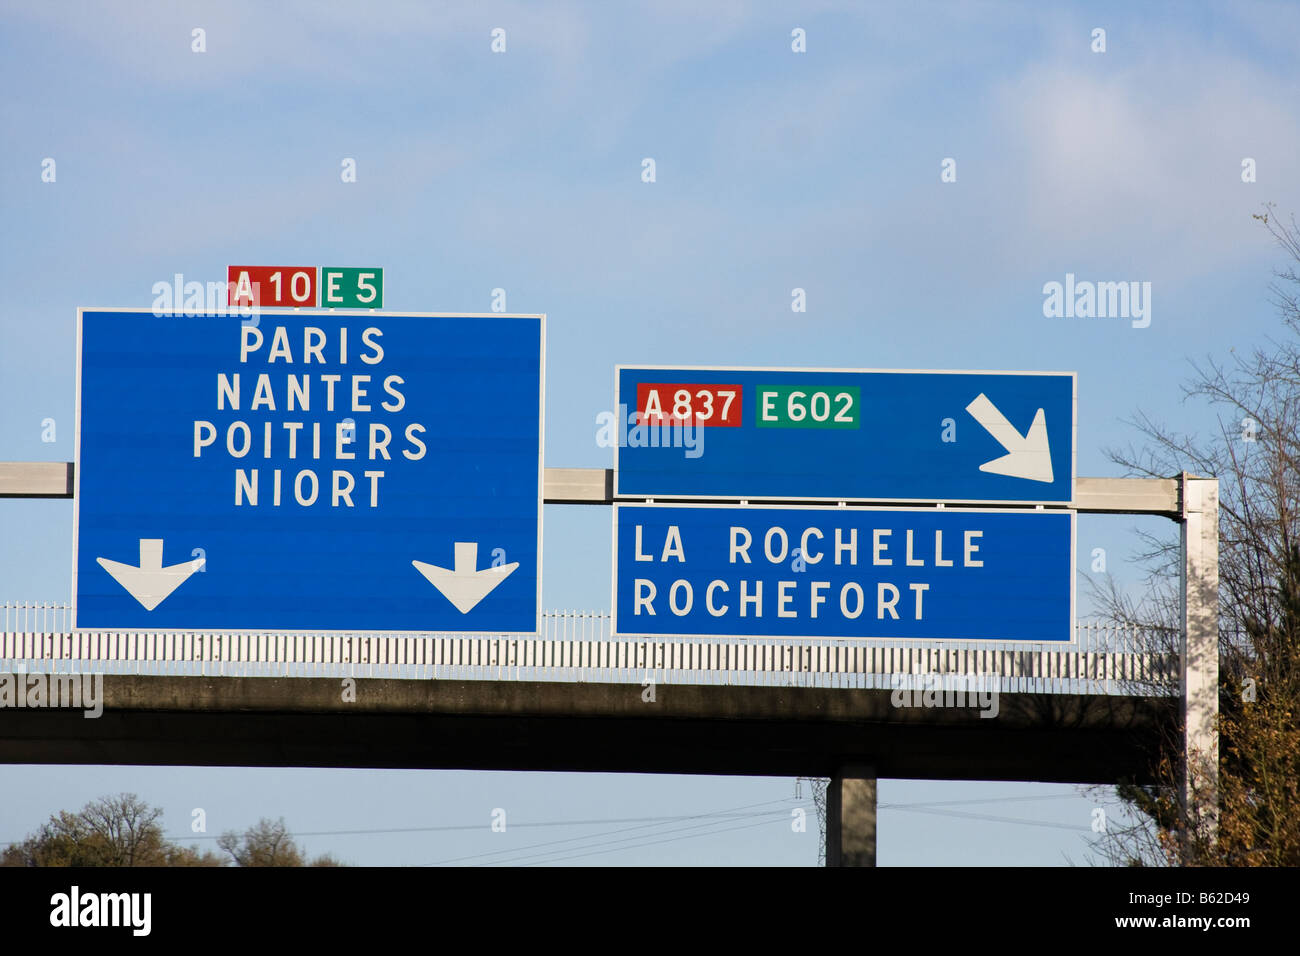 Französisch Autoroute Wegweiser nach Paris, Nantes, Poitiers, Niort, La Rochelle, Rochefort Stockfoto